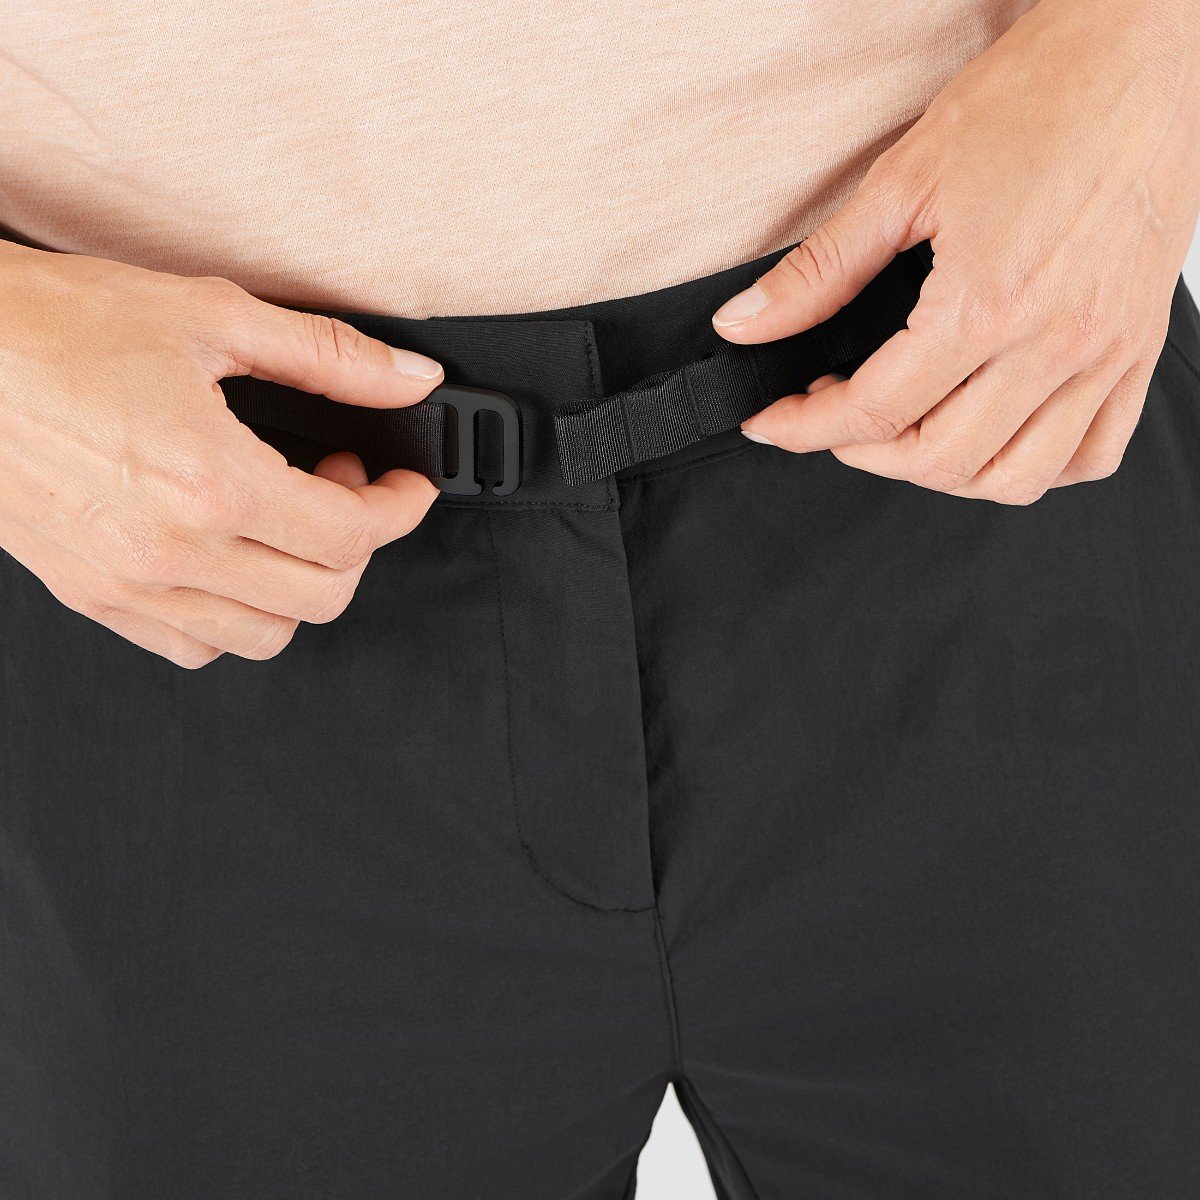 Kalhoty Salomon OUTRACK PANT W - černá (standardní délka)